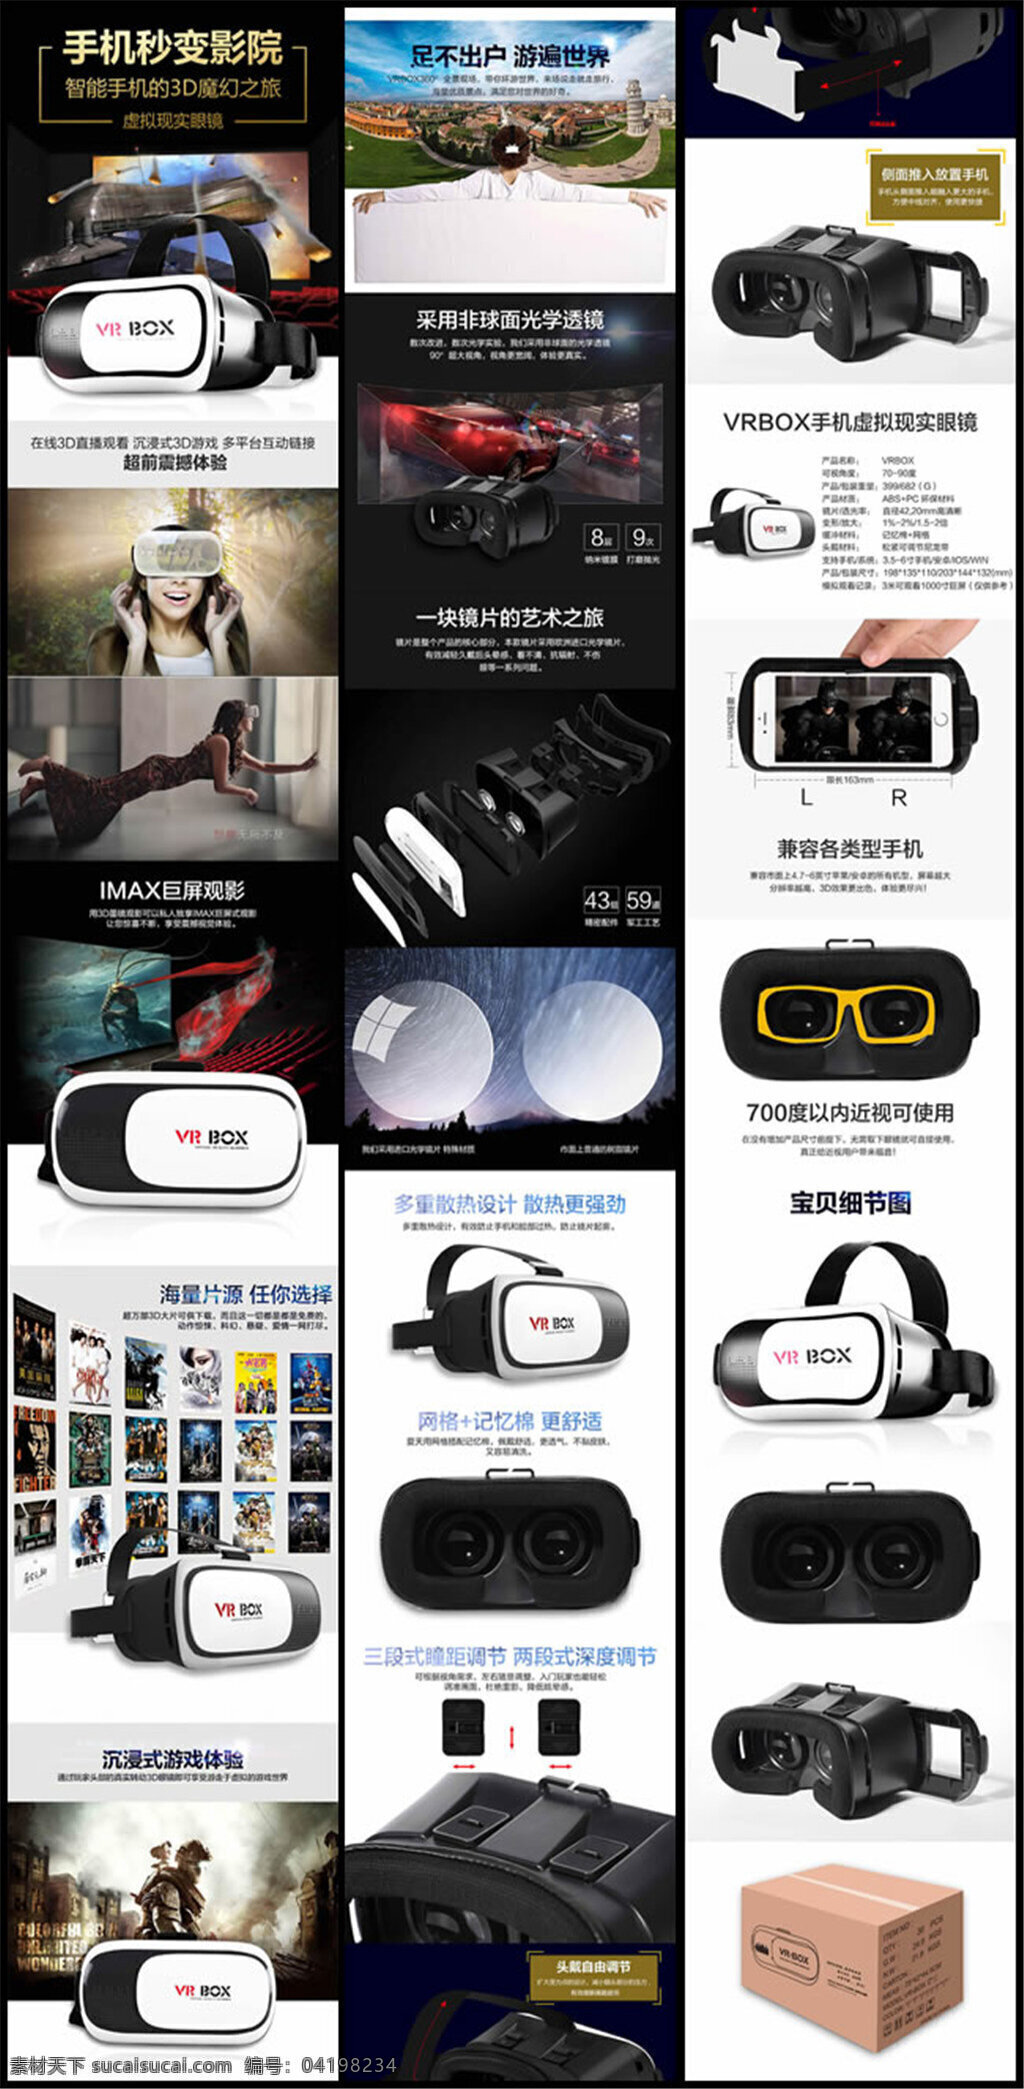 虚拟现实 眼镜 详情 vr 页 vr眼镜 魔镜 3d效果 imax震撼 电影院 未来 背景 手机 电影资源 惊讶 小宅vr 暴风魔镜